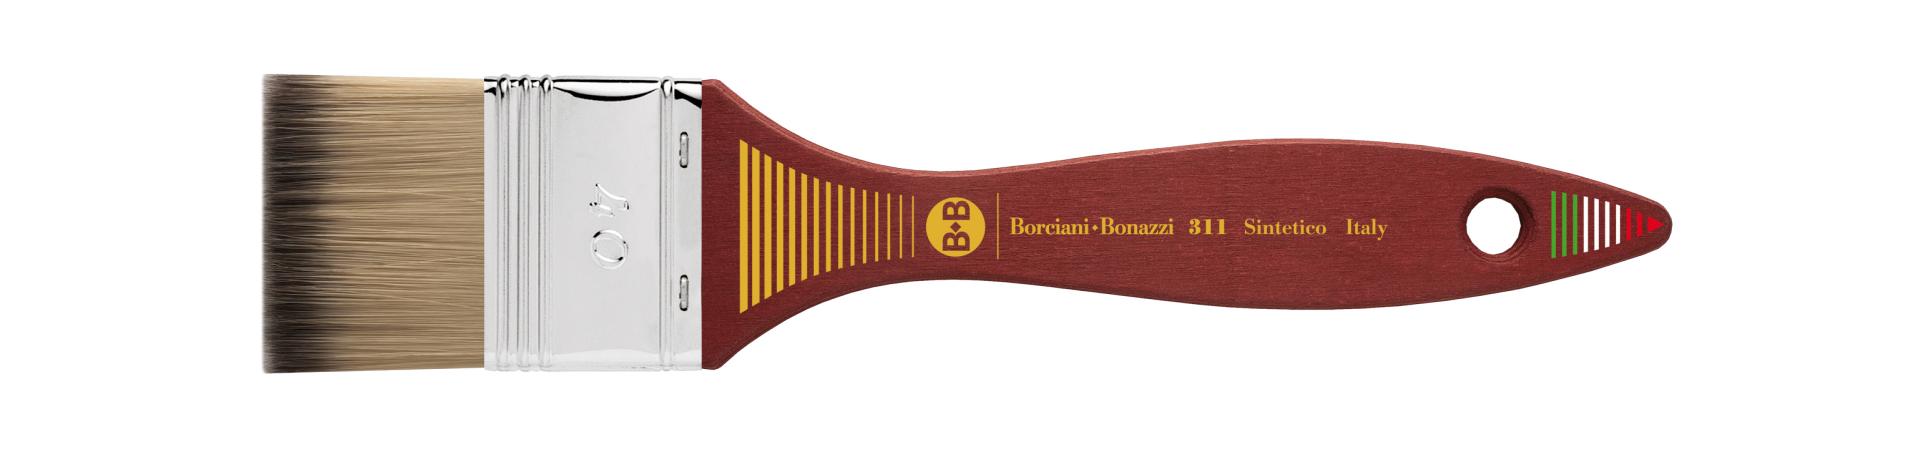 Pennelli per colori acrilici - Acrilico - Borciani&Bonazzi